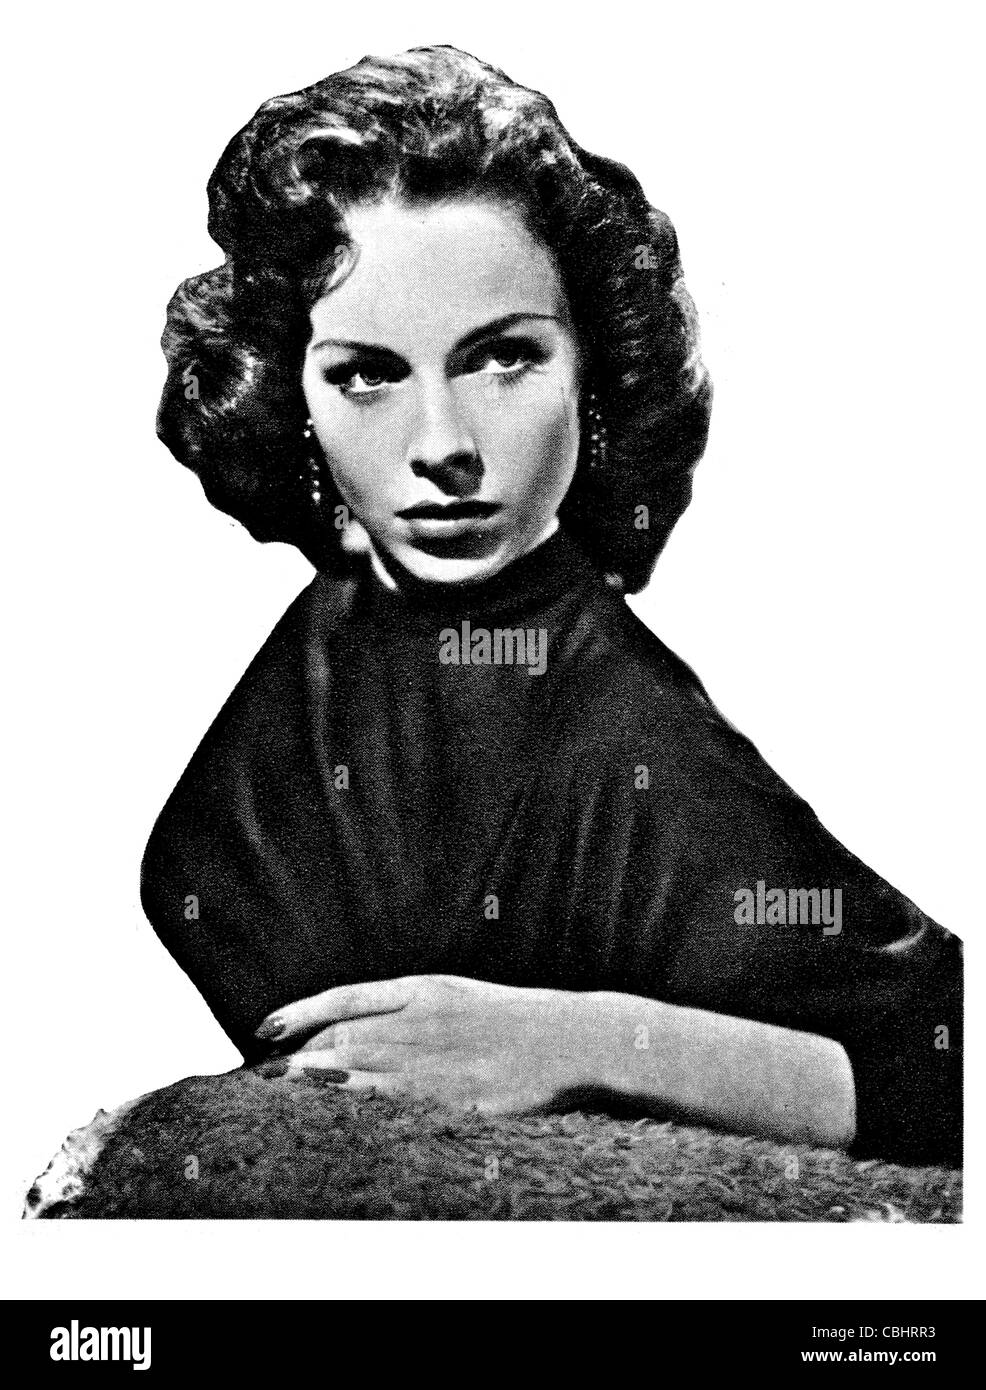 Mara Lane actrice britannique du film autrichien annuel 1945 1955 tournage cinéma cinémascope movie films fame célèbre célébrité star Banque D'Images